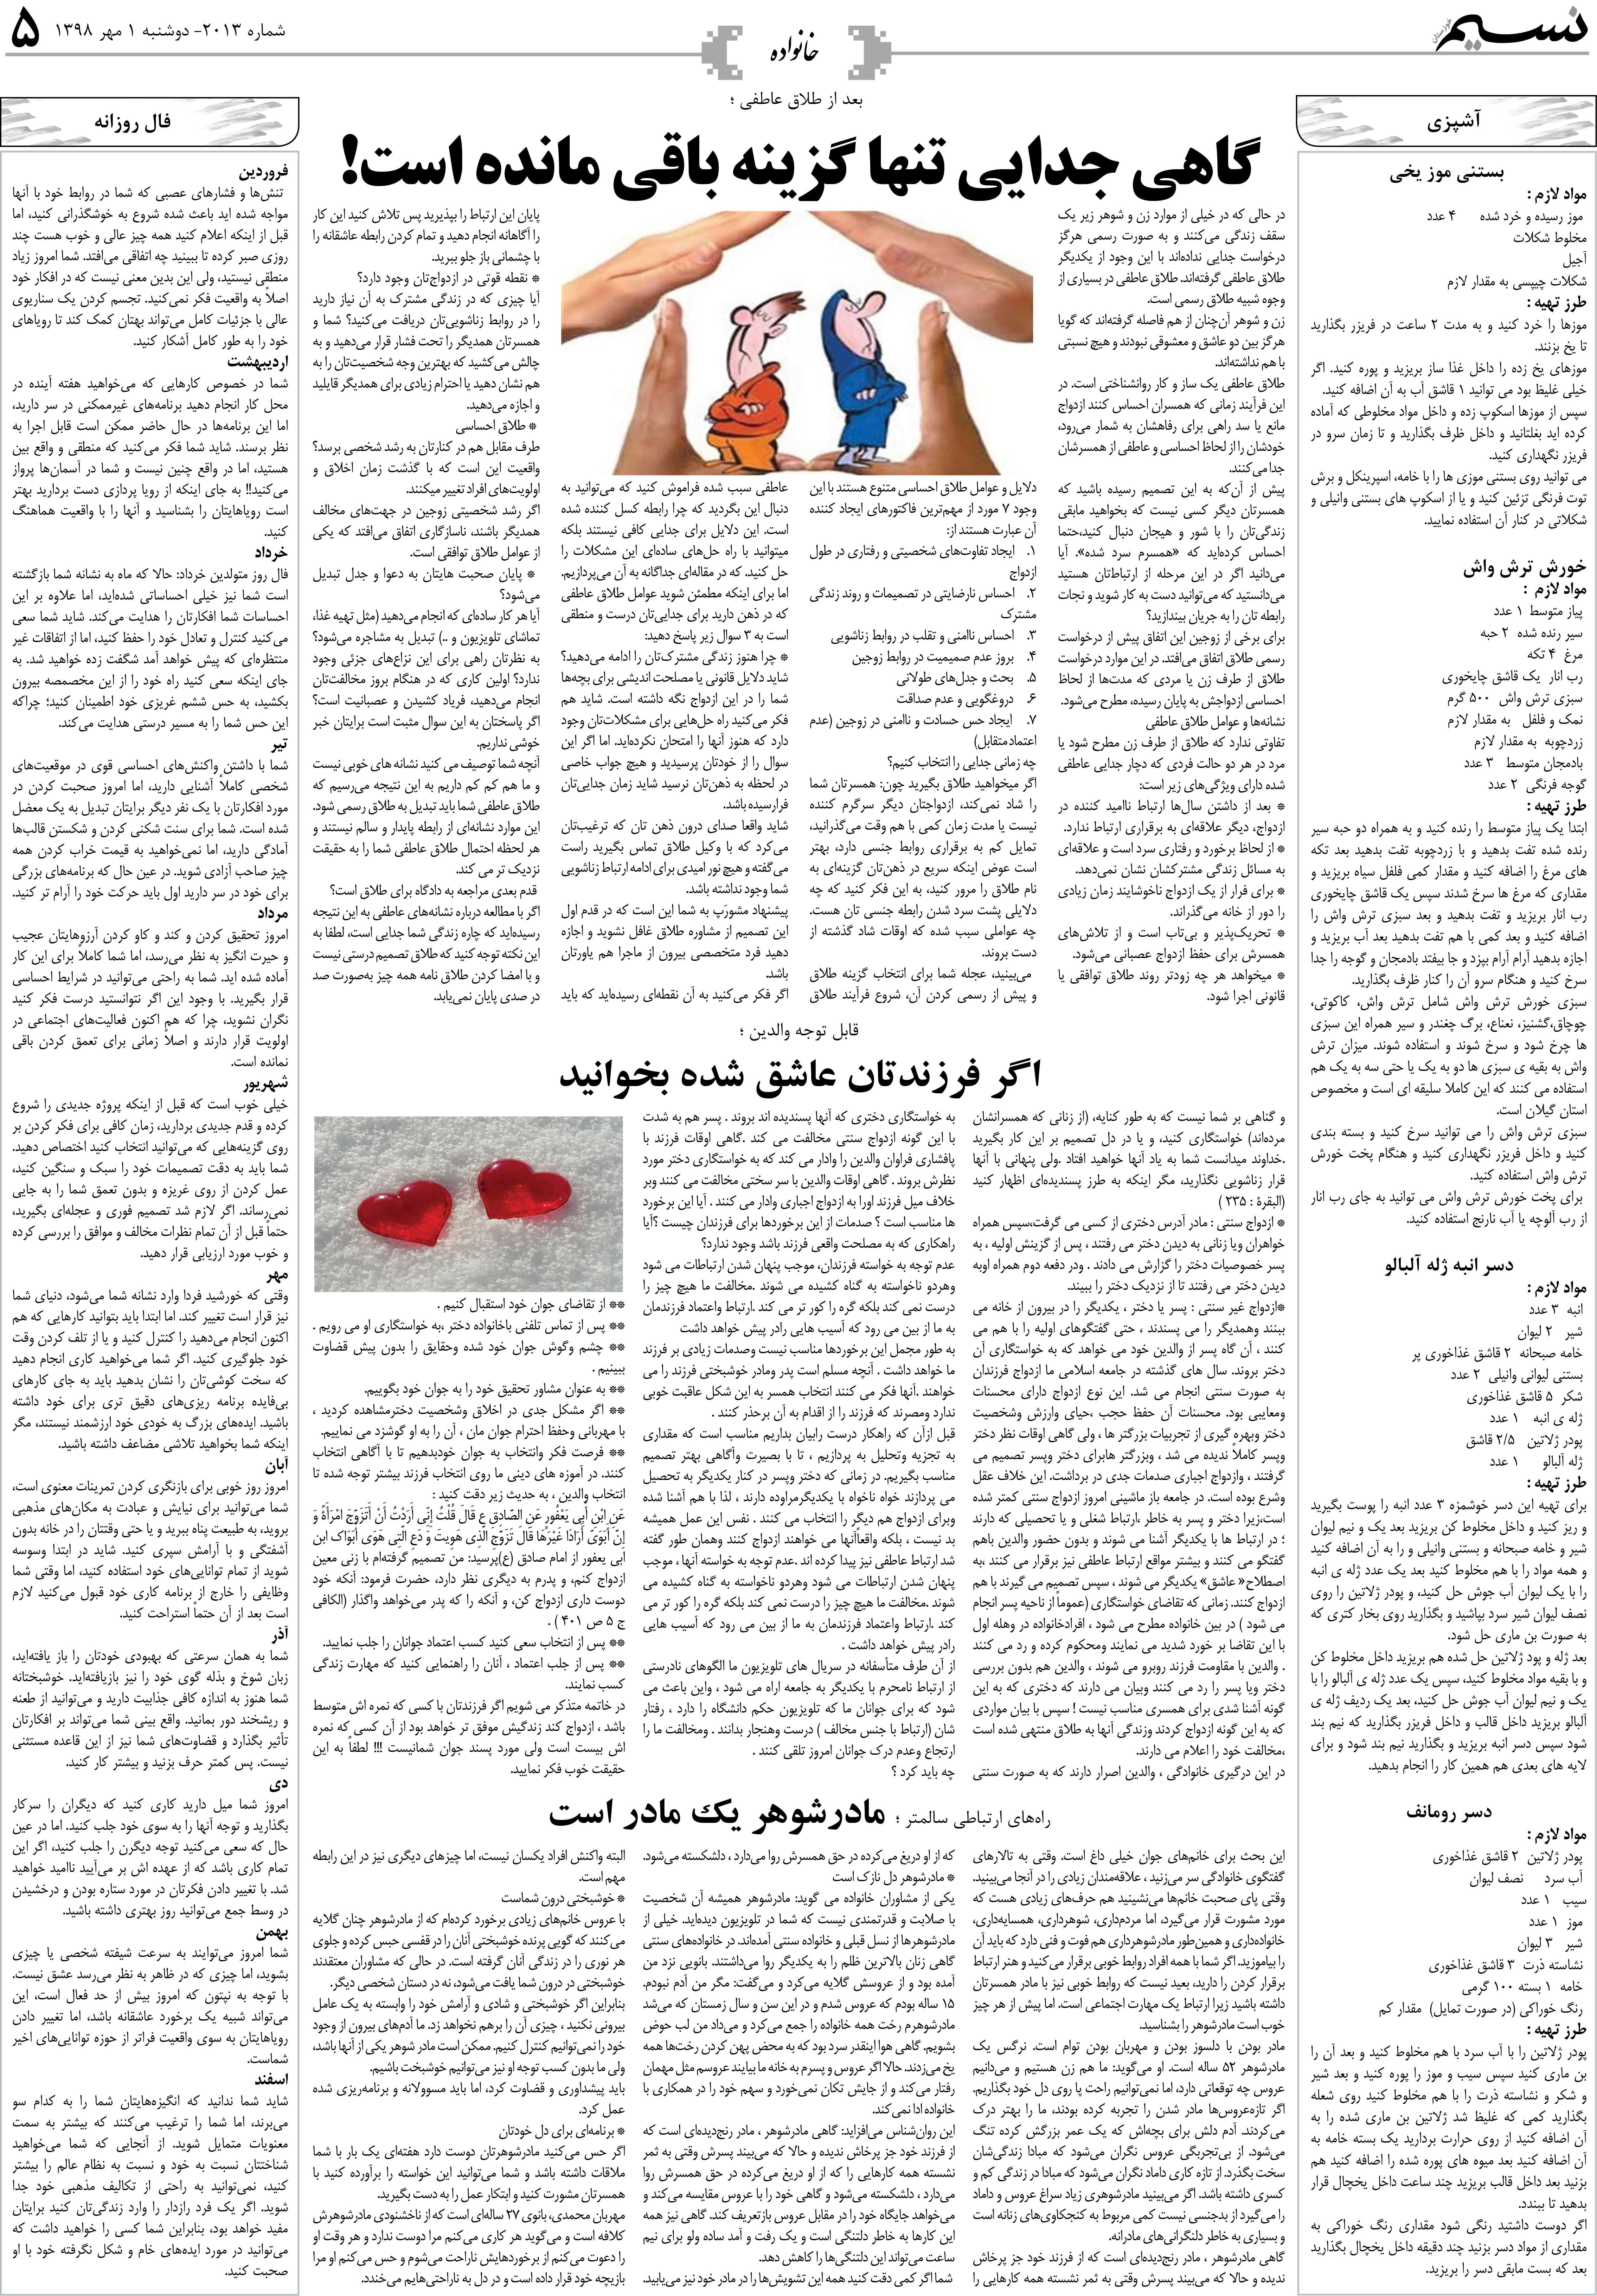 صفحه خانواده روزنامه نسیم شماره 2013